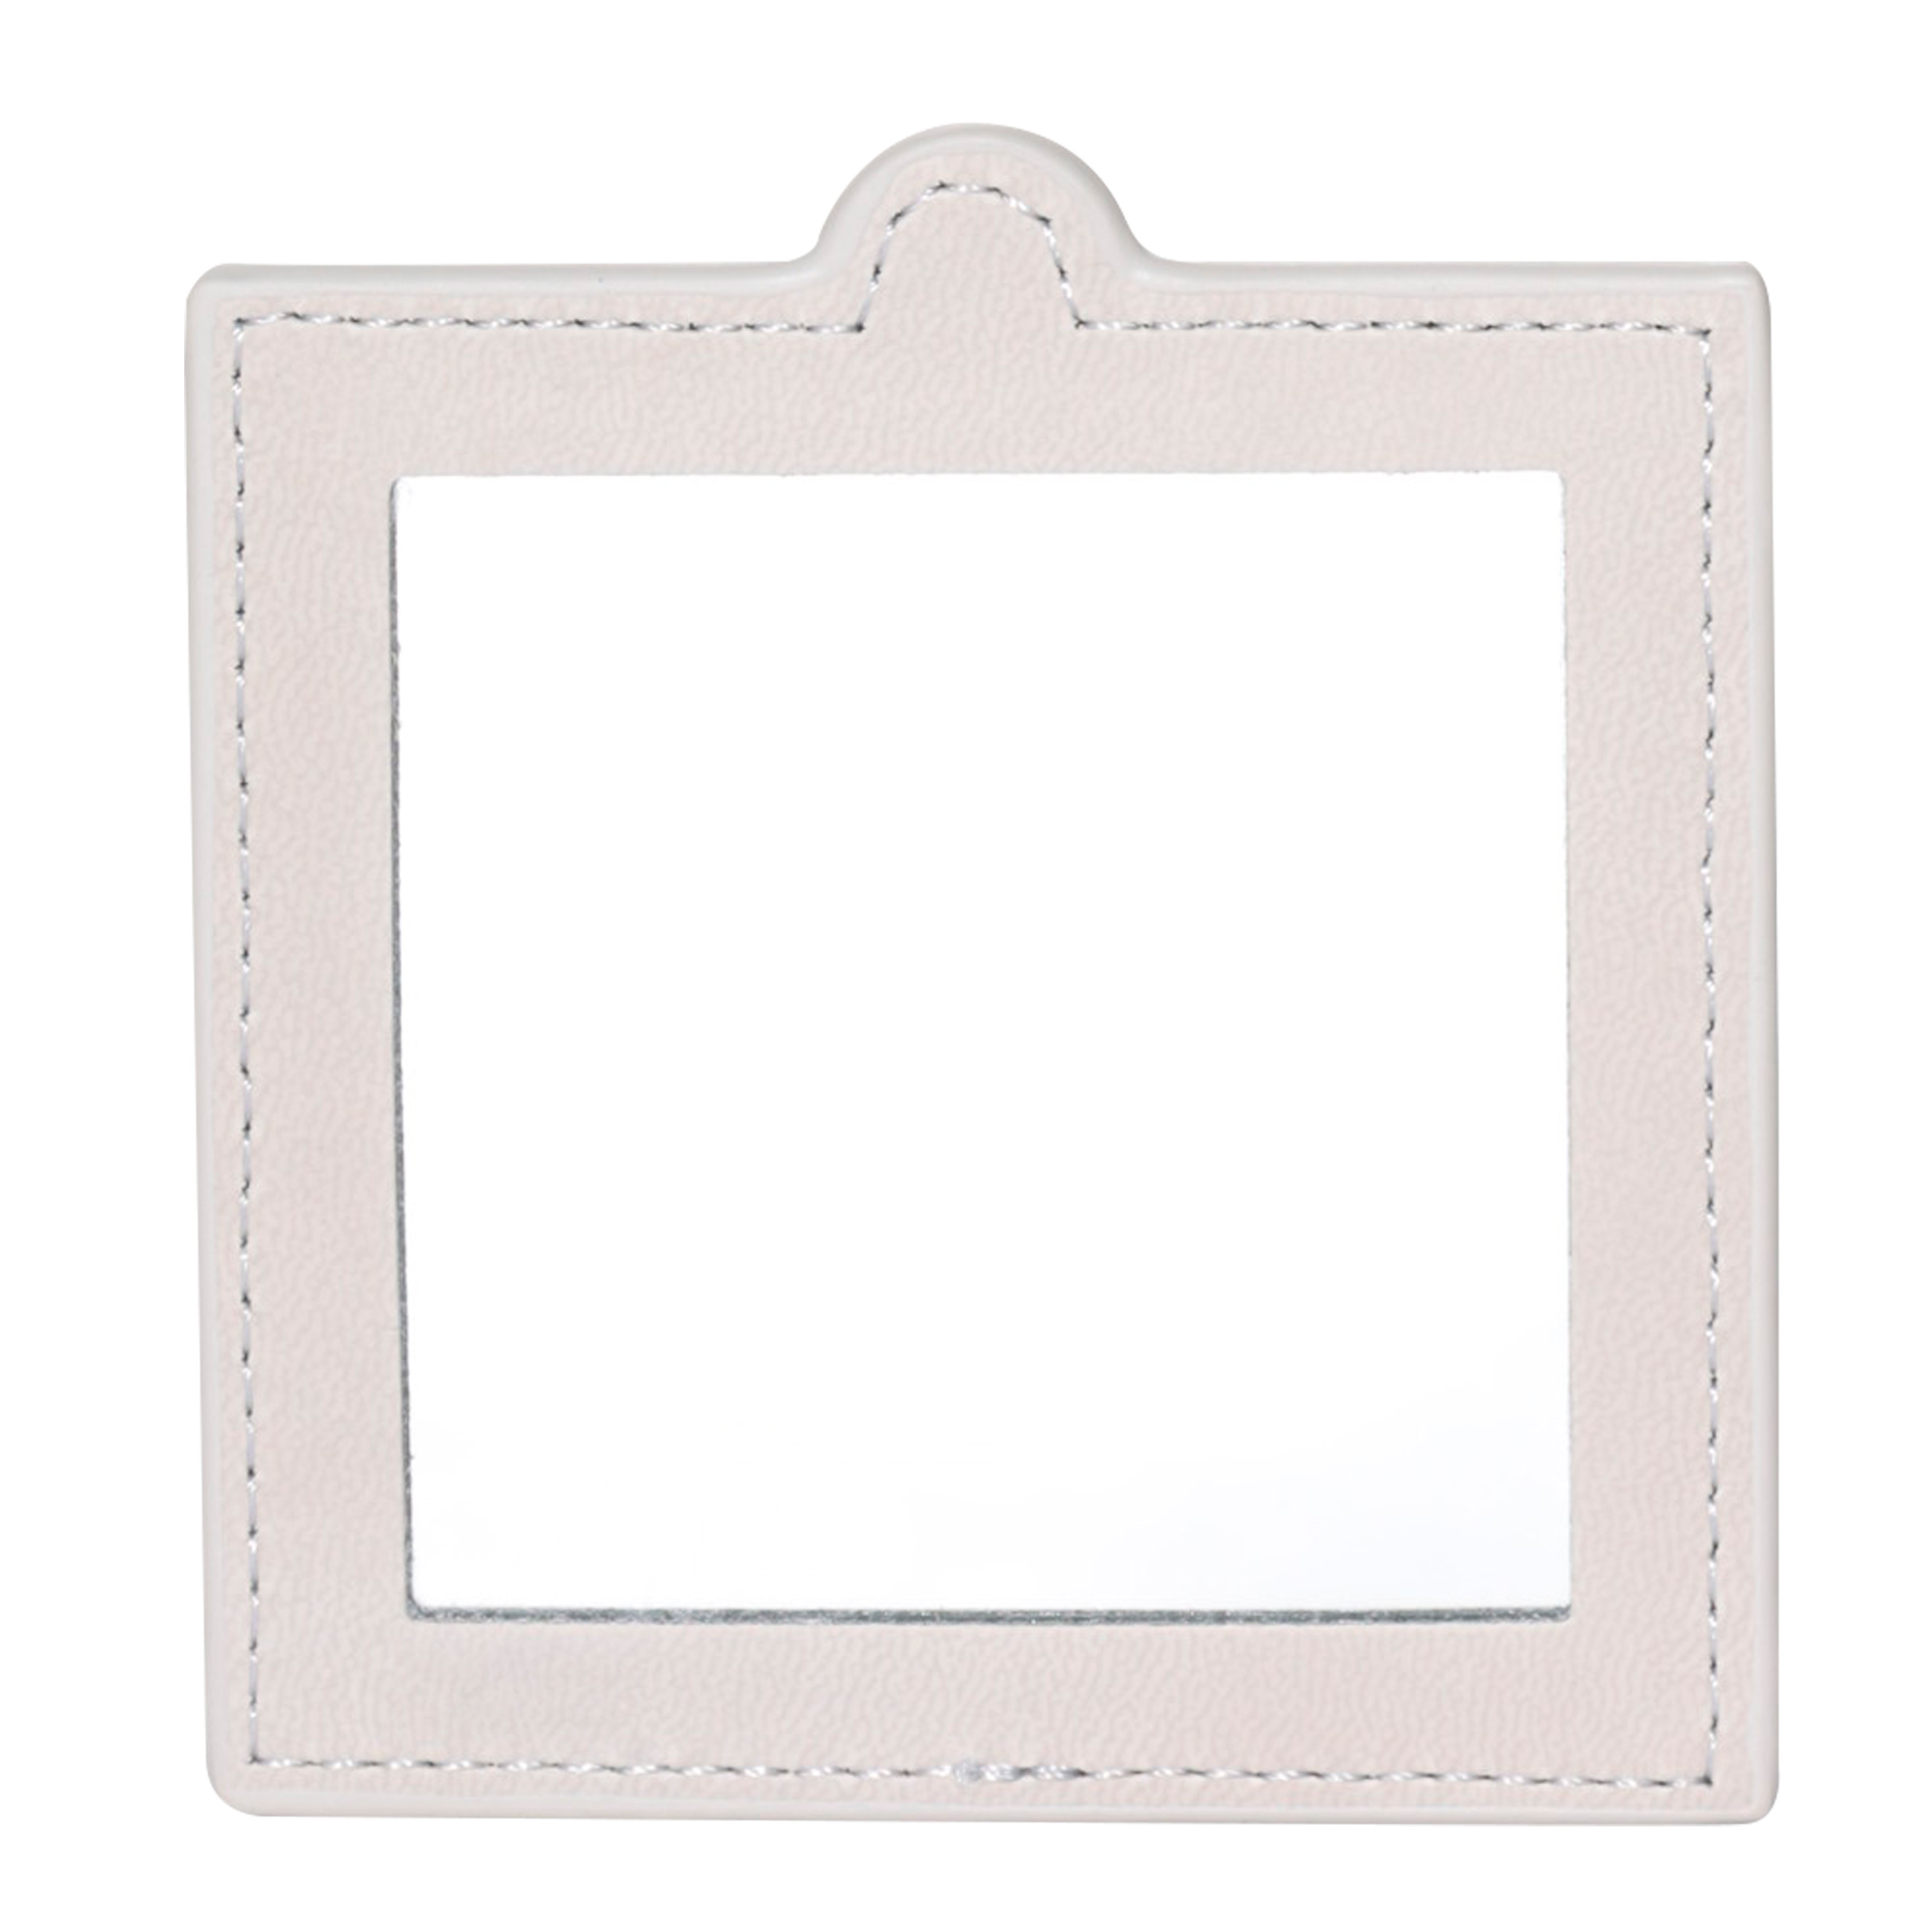 Зеркало карманное, 10х9 см, в чехле, полиуретан, серое, Memo изображение № 4